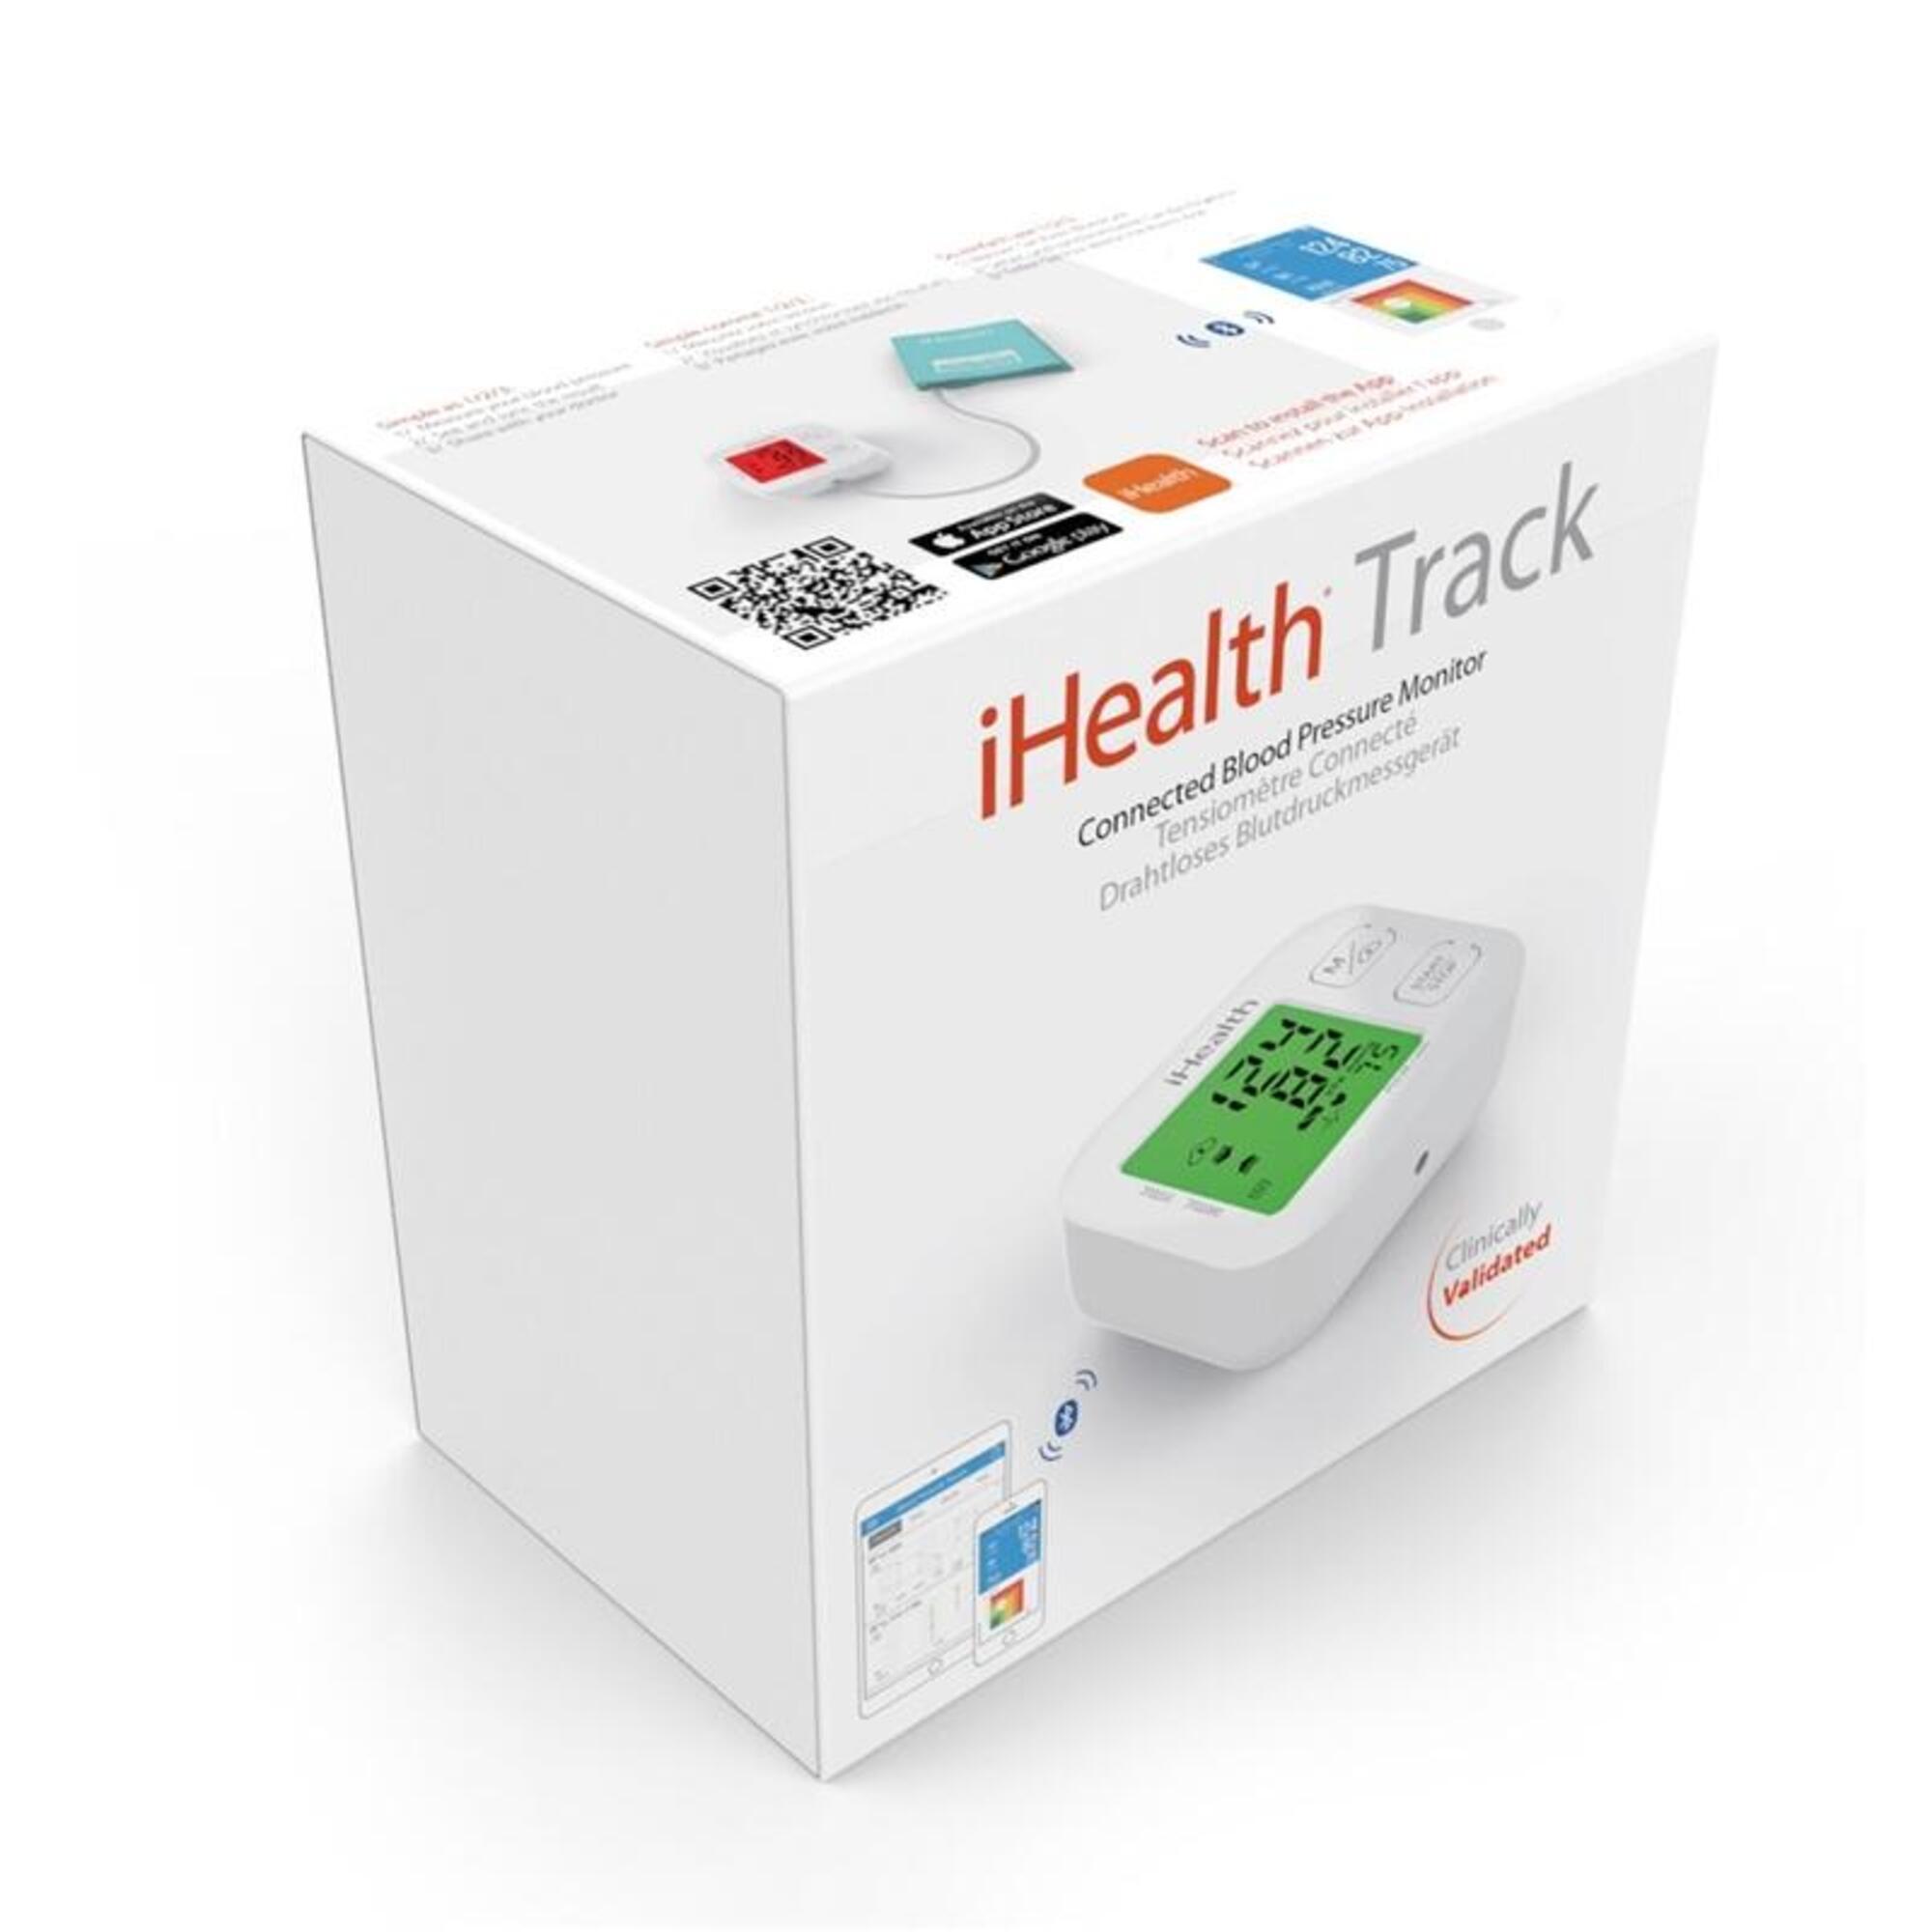 iHealth tensiómetro y monitor inalámbrico inteligente Track